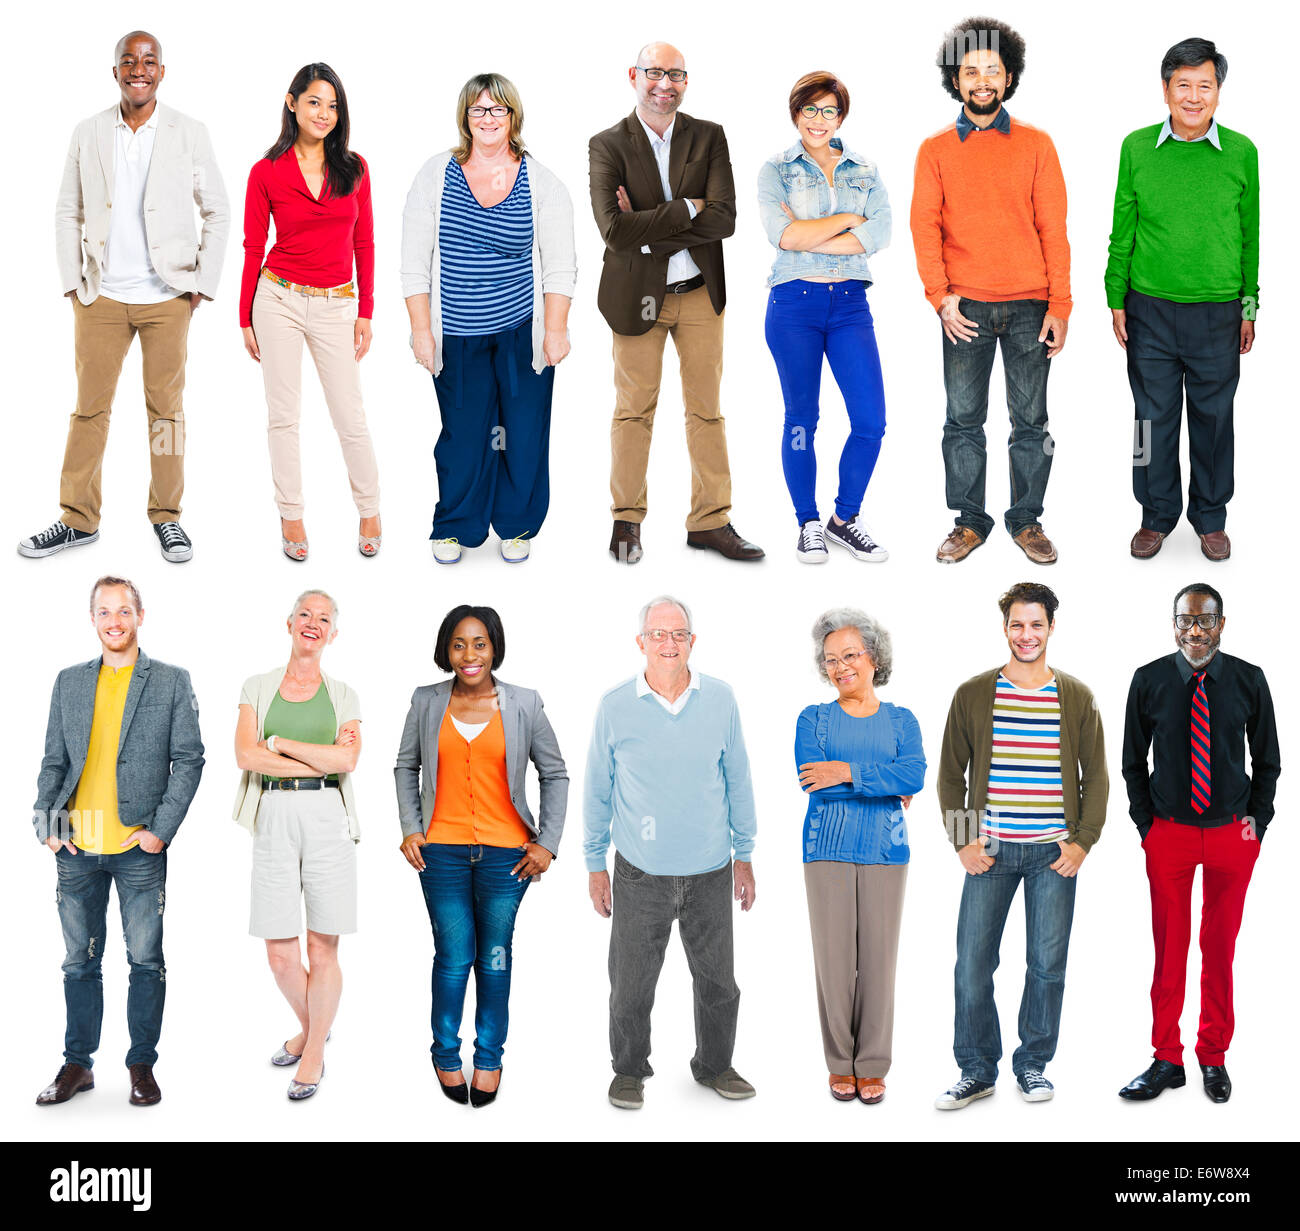 Longueur totale de diverses personnes multiethnique dans une rangée Banque D'Images